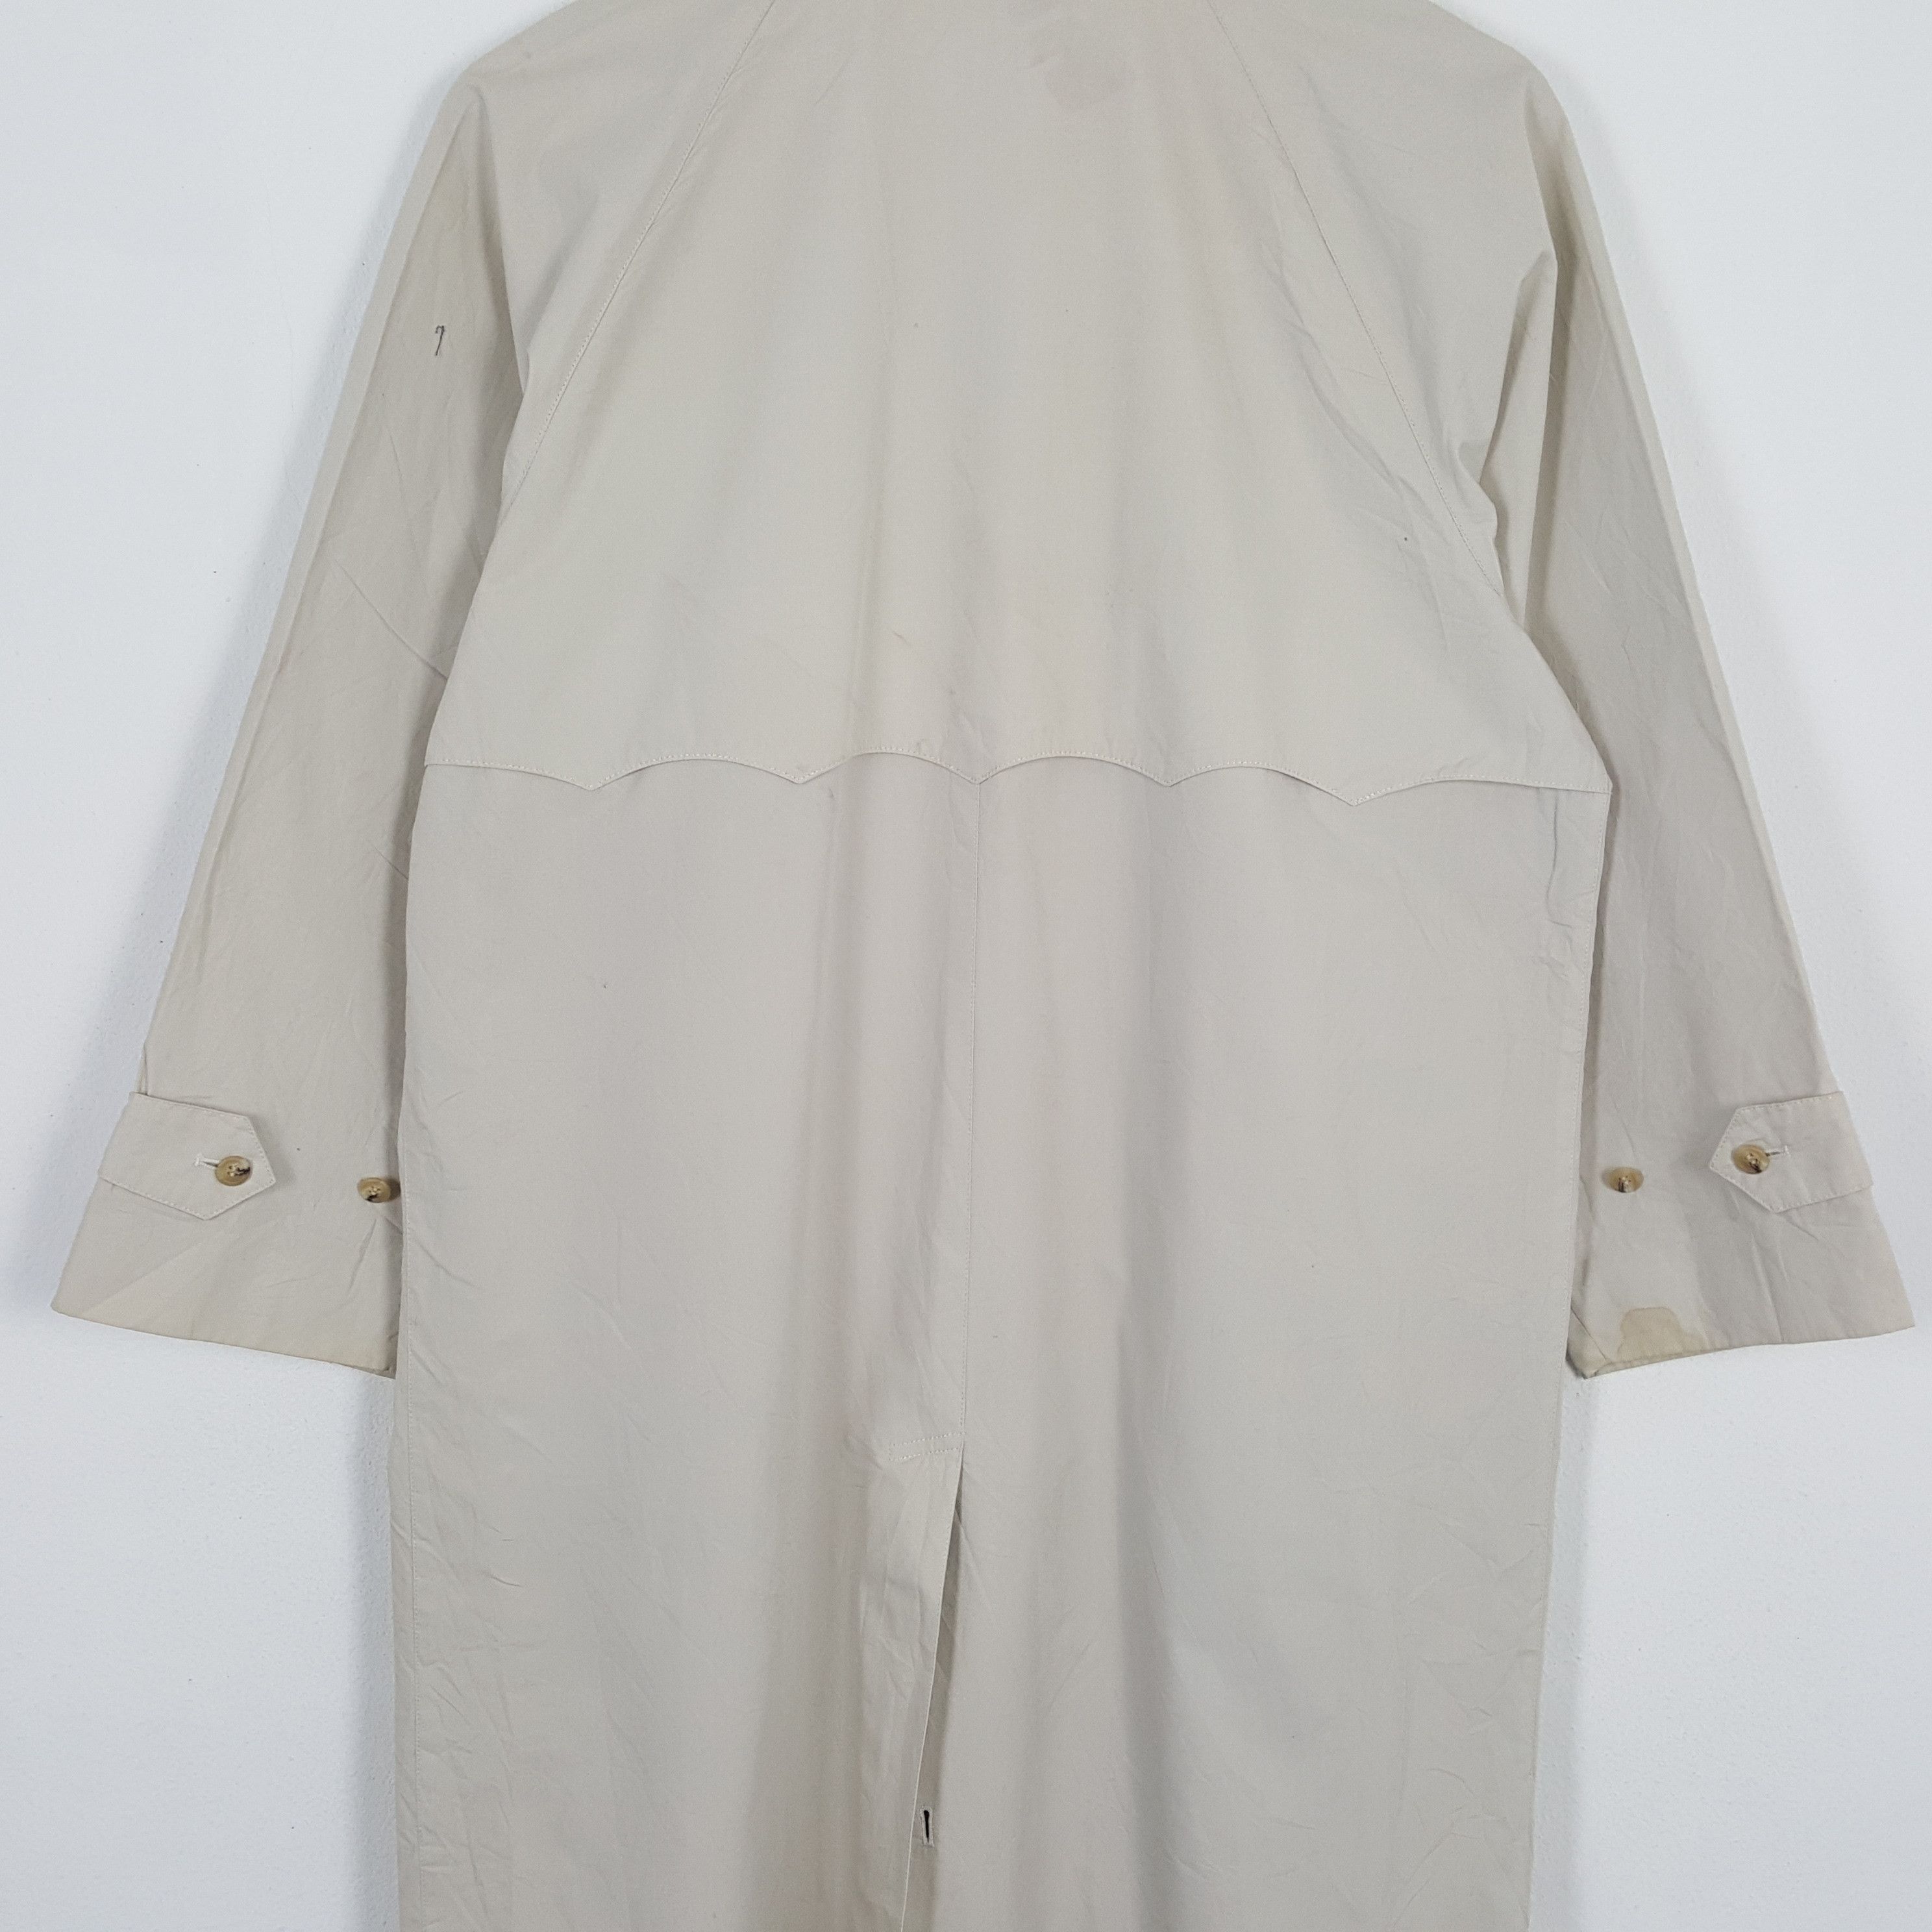 Vintage BARACUTA British Style Long Vintage Jacket Size US XL / EU 56 / 4 - 4 Thumbnail